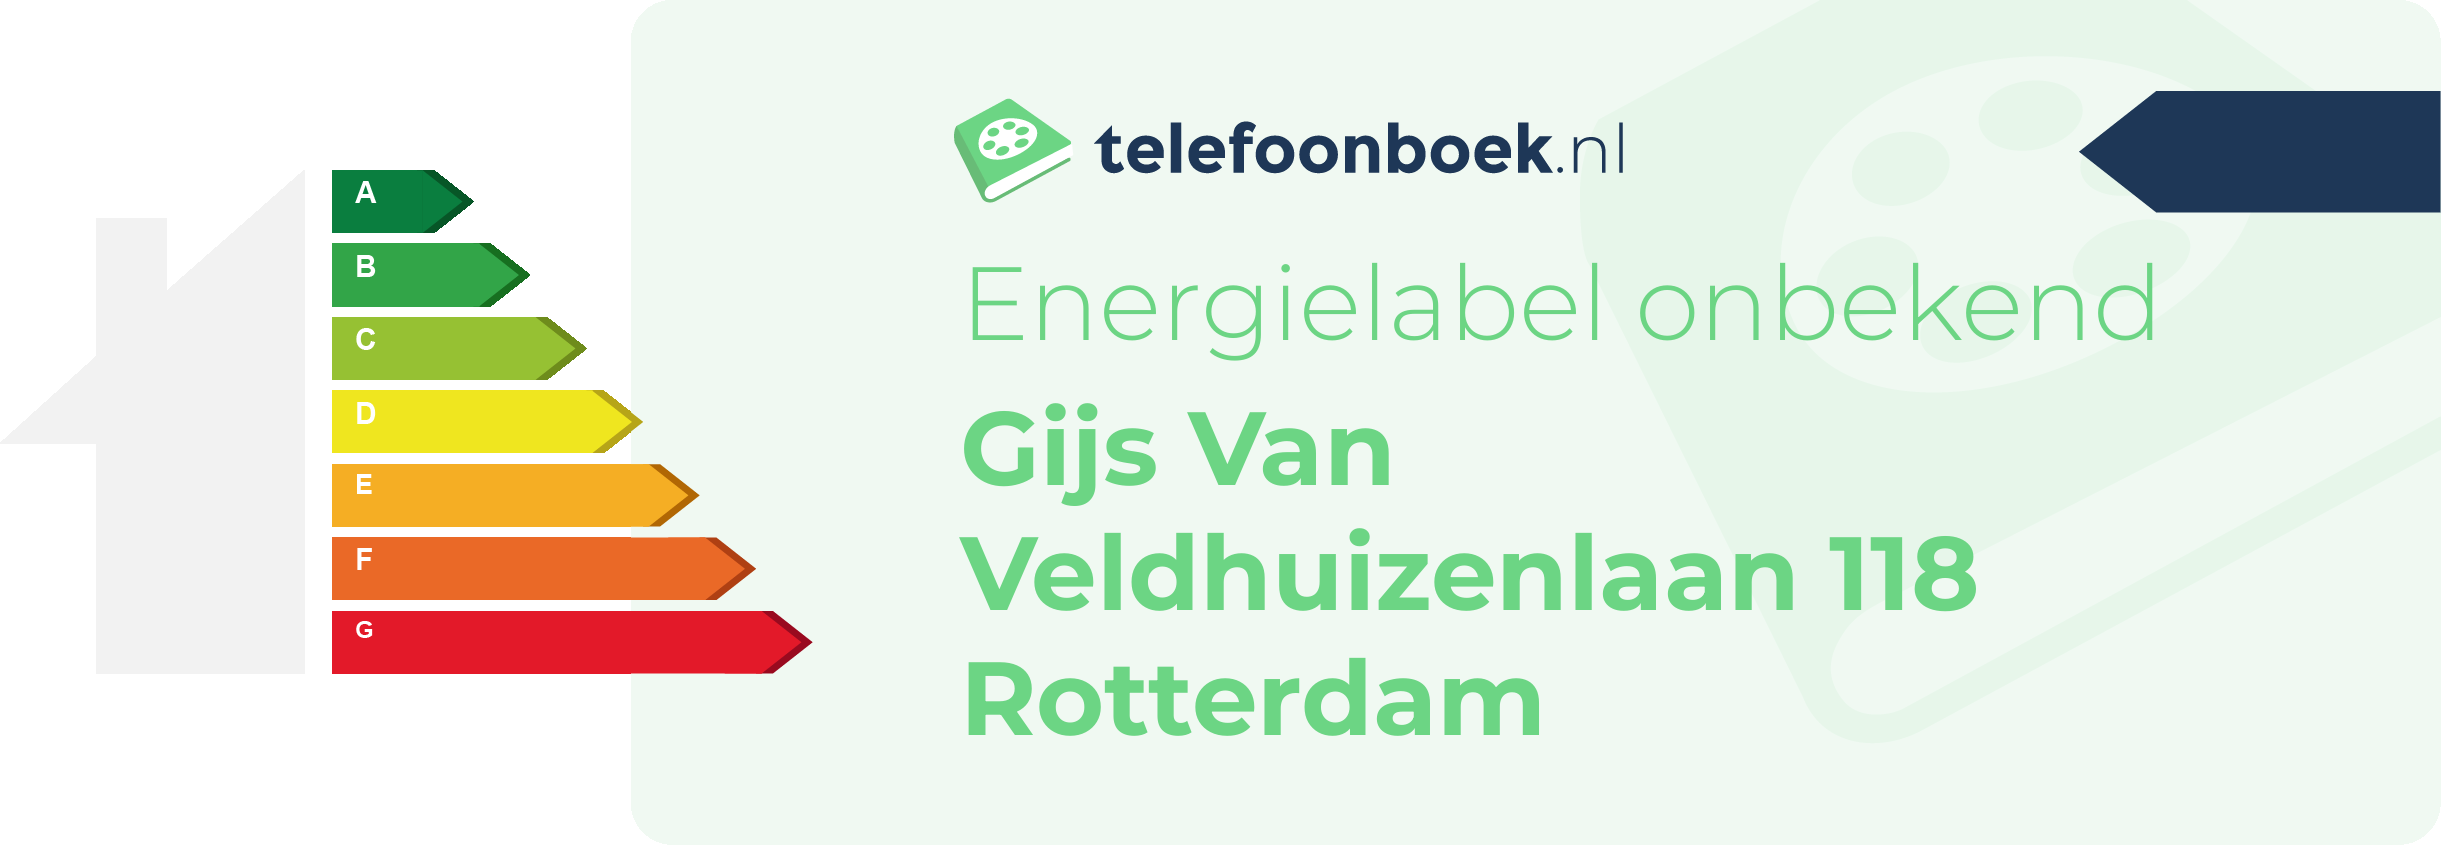 Energielabel Gijs Van Veldhuizenlaan 118 Rotterdam